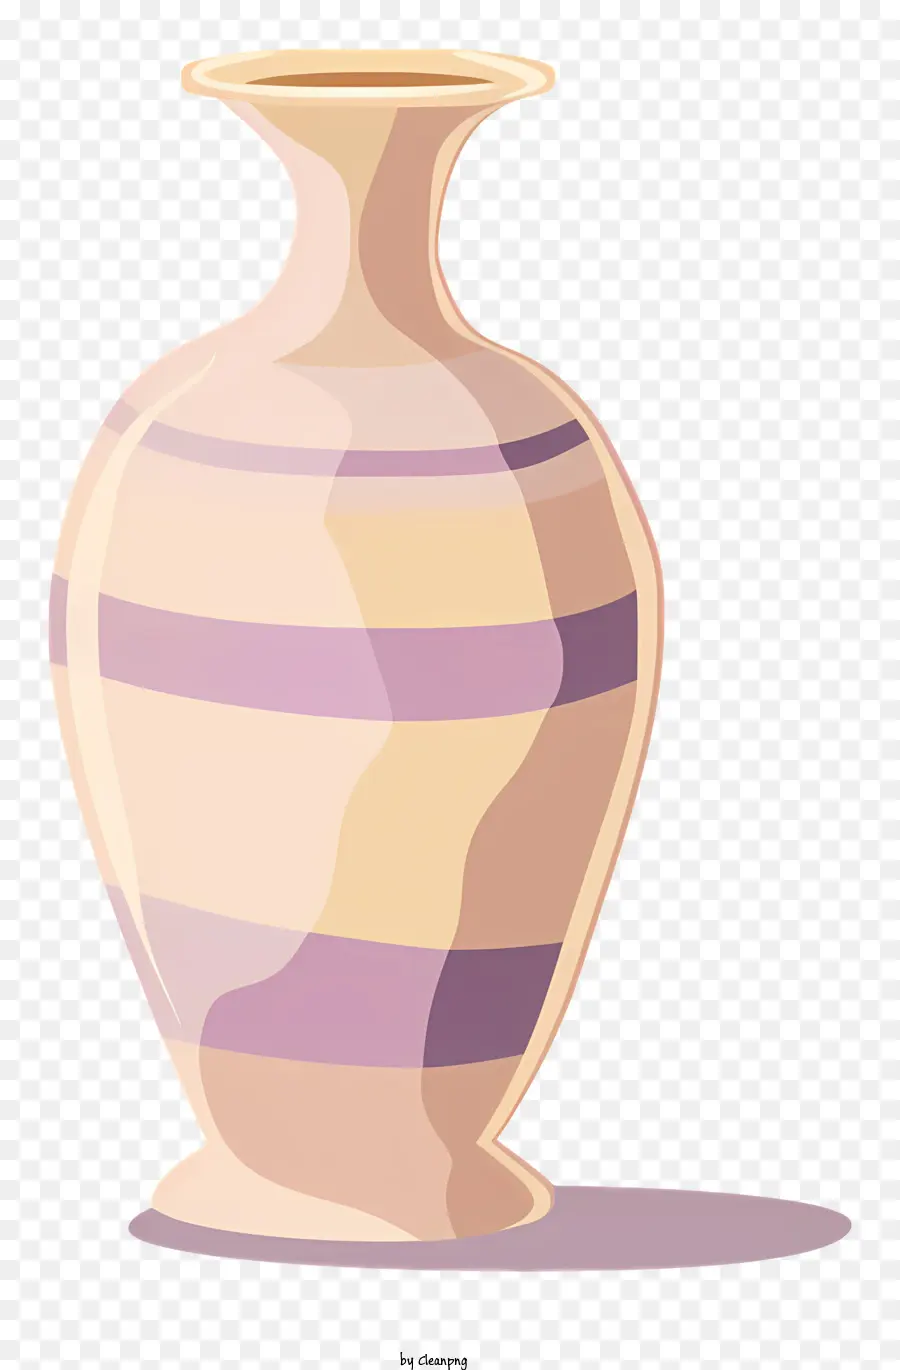 Vase braune Vase gestreiftes Design Keramikmaterial Slipguss - Braune Vase mit gestreiften Design und weißer Basis